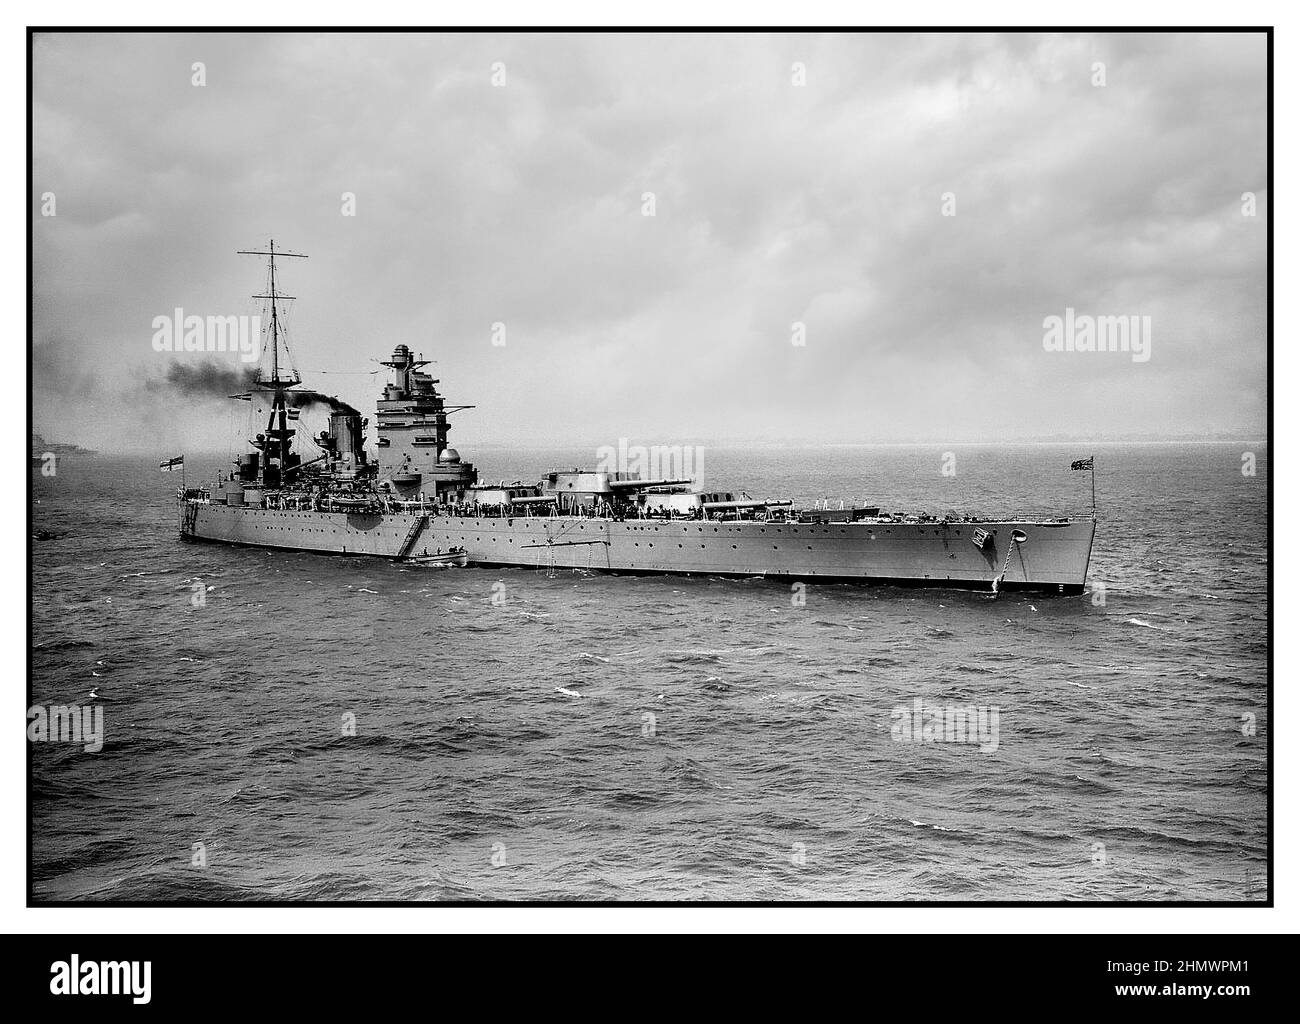 Le HMS Rodney WW2 était l'un des deux navires de guerre de classe Nelson construits pour la Marine royale au milieu de 1920s. Le navire est entré en service en 1928, et a passé sa carrière en temps de paix avec les flottes de l'Atlantique et de la maison, servant parfois de navire-amiral lorsque son navire jumeau, Nelson, était remis en état. Durant les premières étapes de la Seconde Guerre mondiale, elle a cherché des raids de commerce allemands, participé à la campagne norvégienne et escorté des convois dans l'océan Atlantique. Le HMS Rodney a joué un rôle majeur dans le naufrage du cuirassé allemand Bismarck au milieu de 1941. Banque D'Images